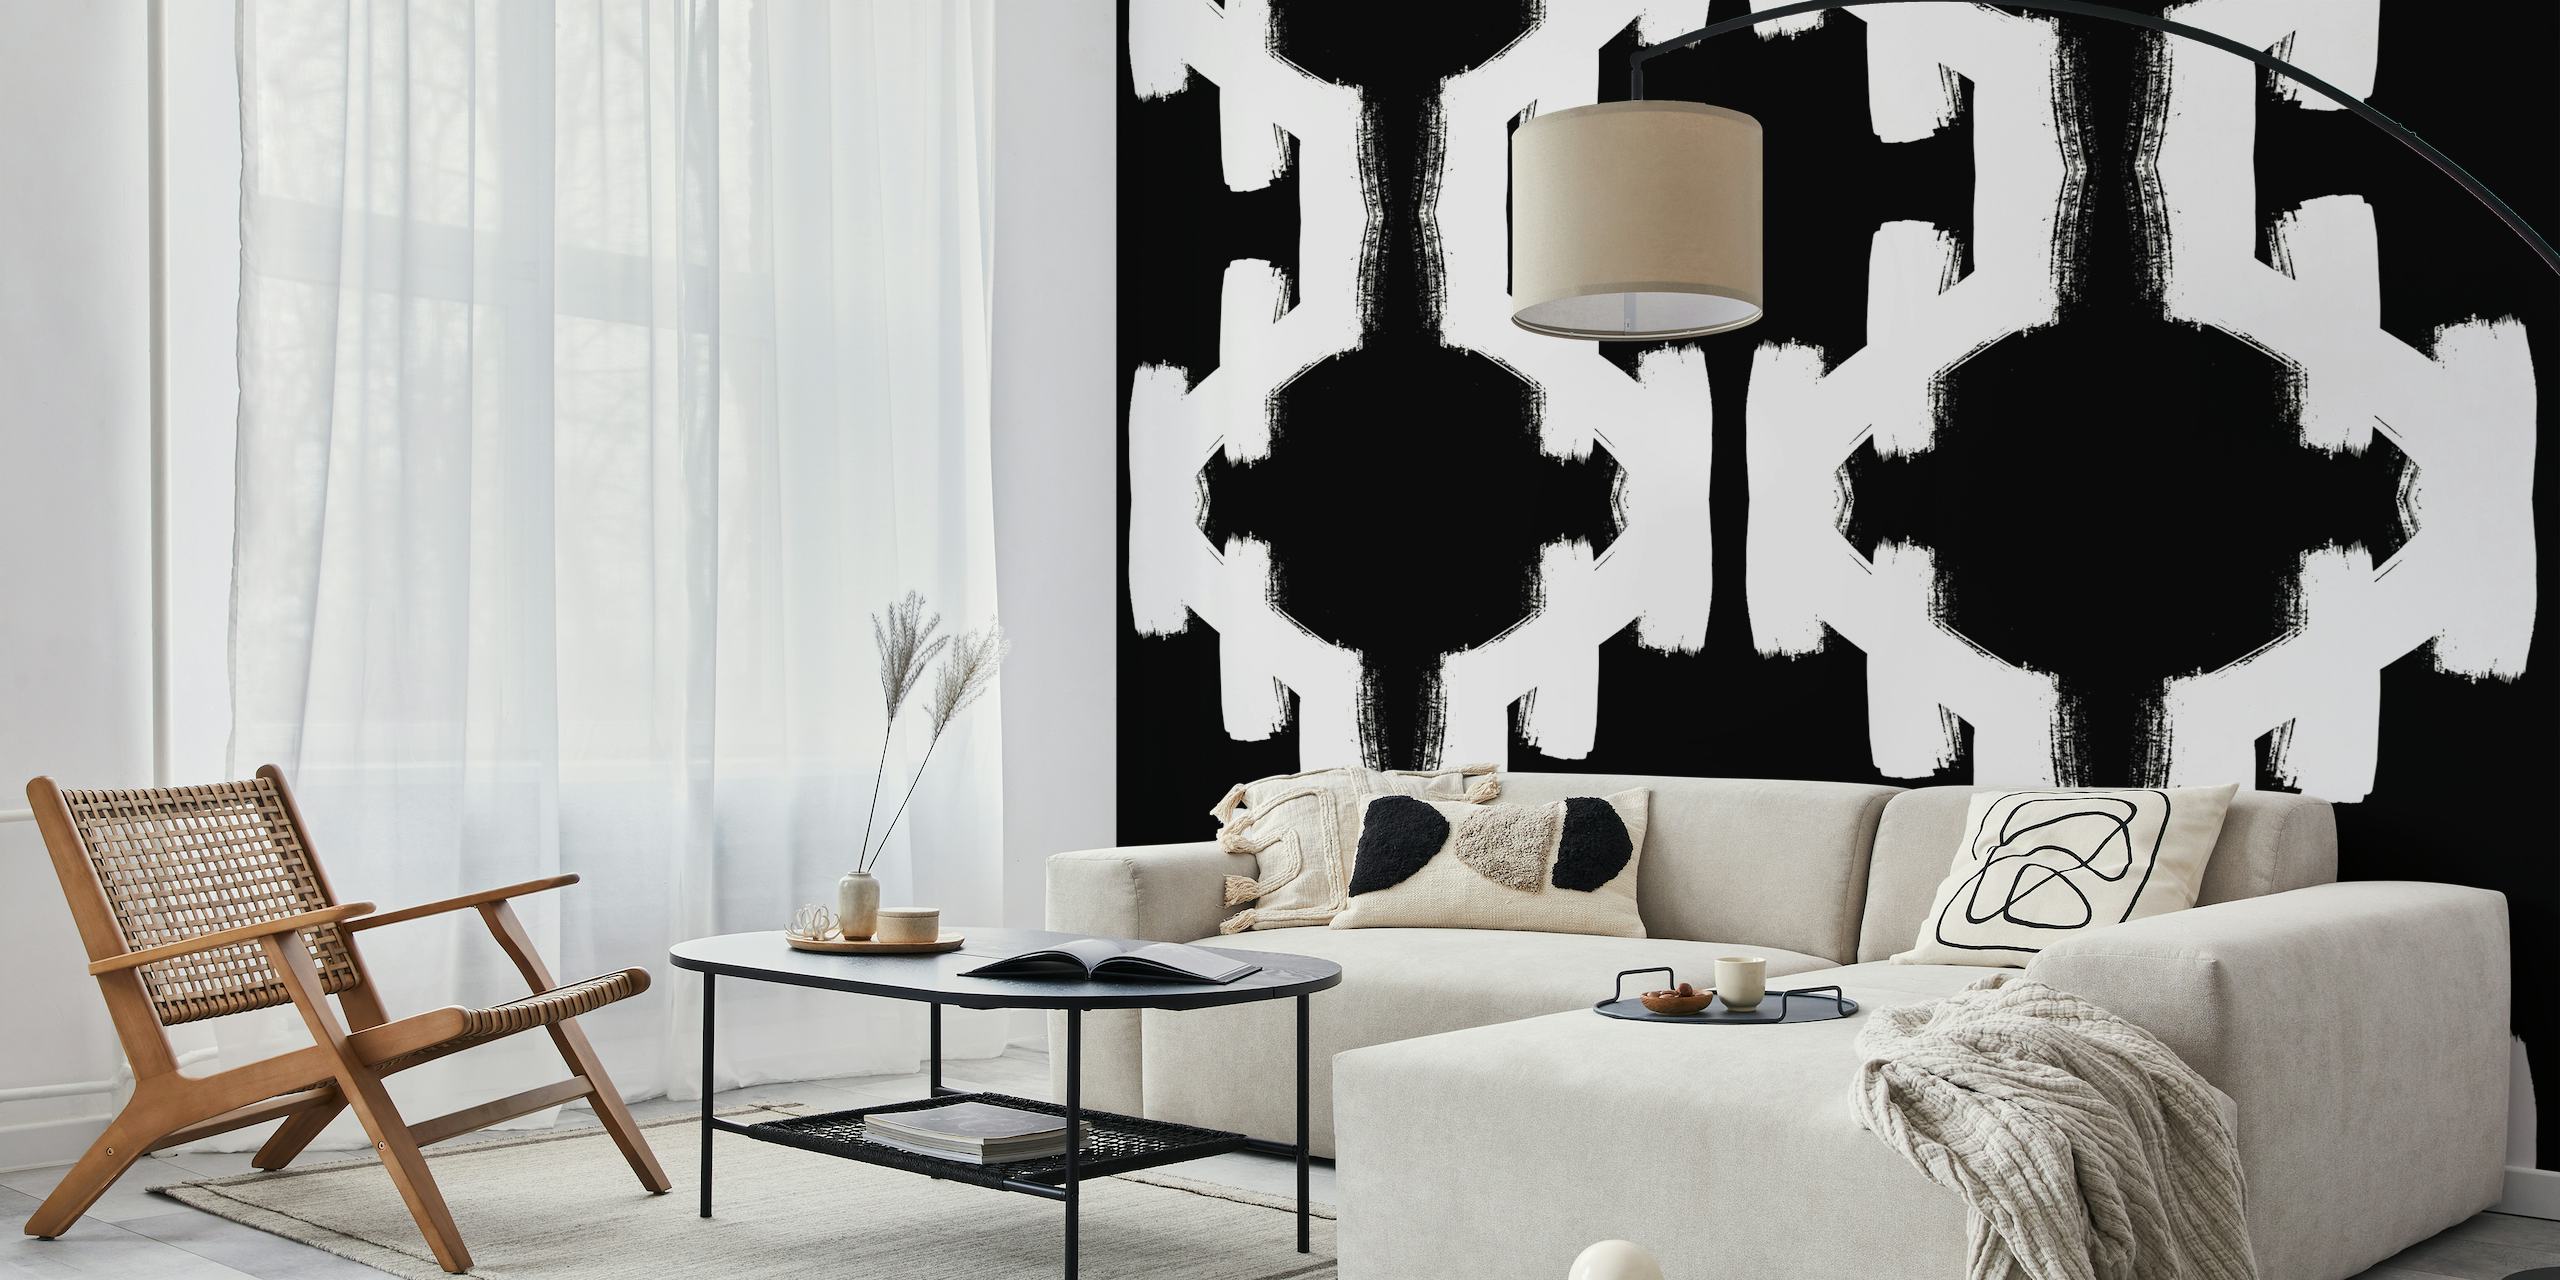 Fotomural con motivos geométricos abstractos en blanco y negro para un diseño interior contemporáneo